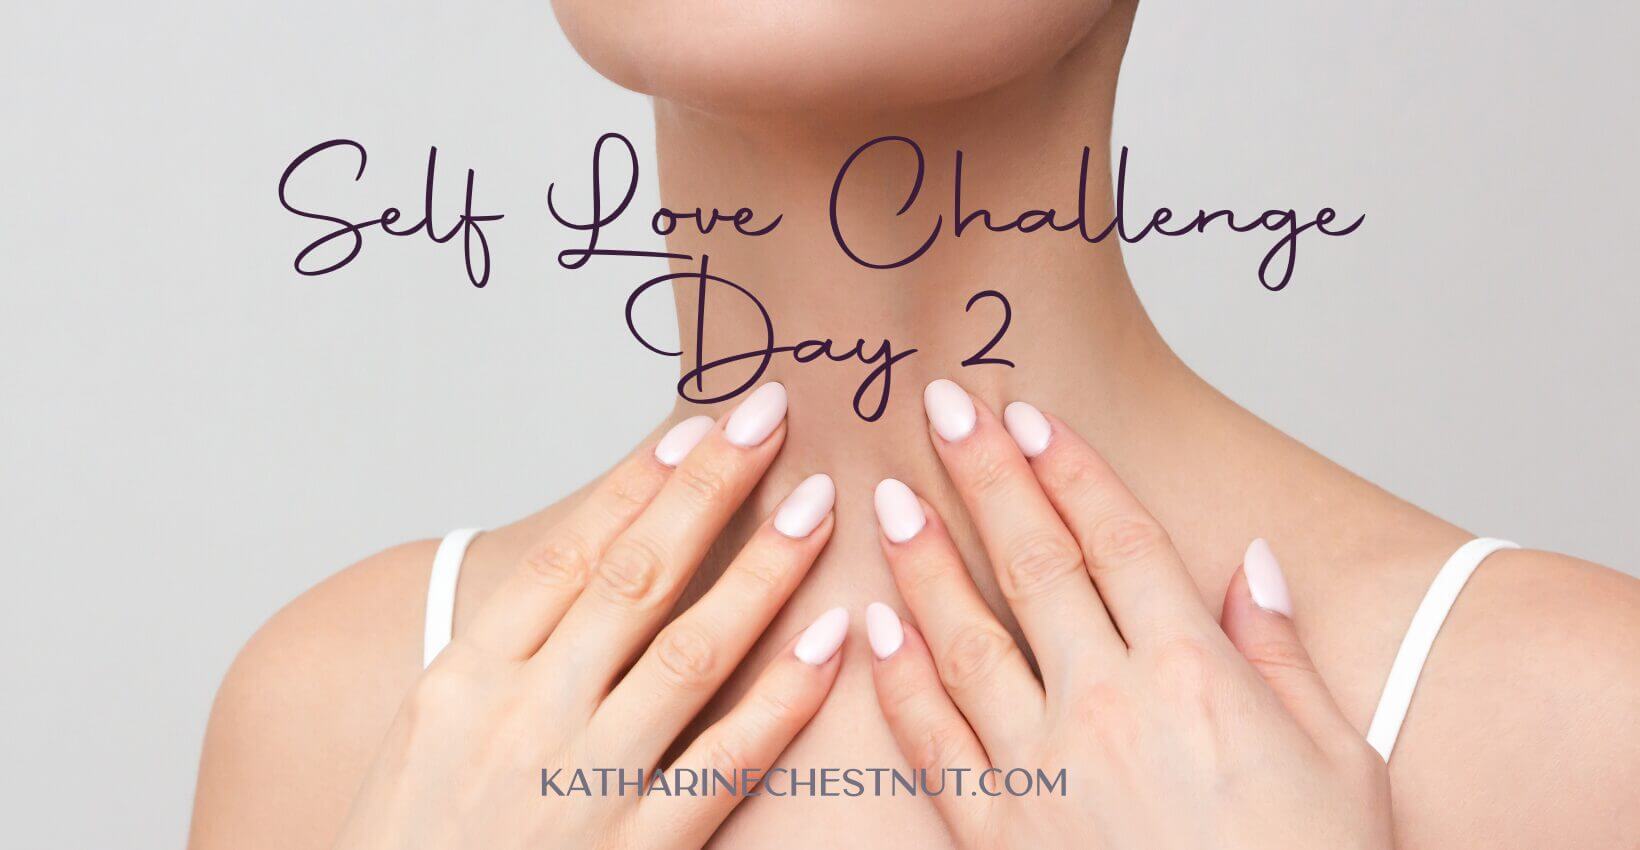 Self Love Challenge | Katharine Chestnut